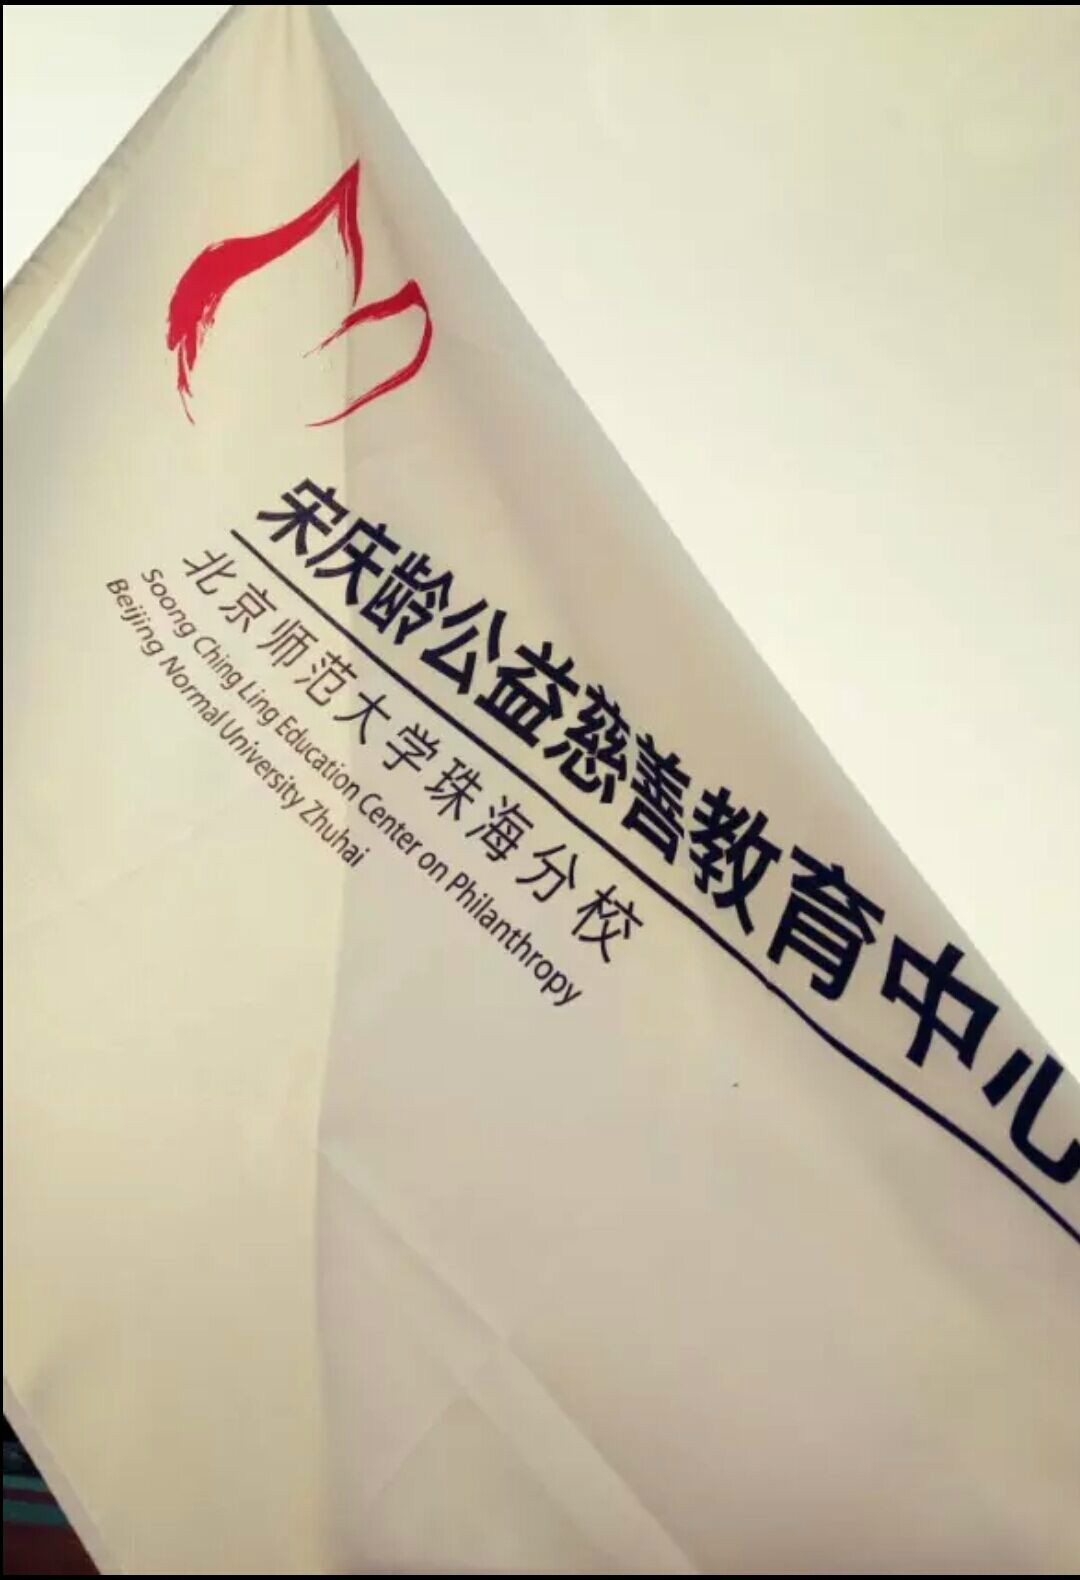 北京師範大學珠海分校宋慶齡公益慈善教育中心